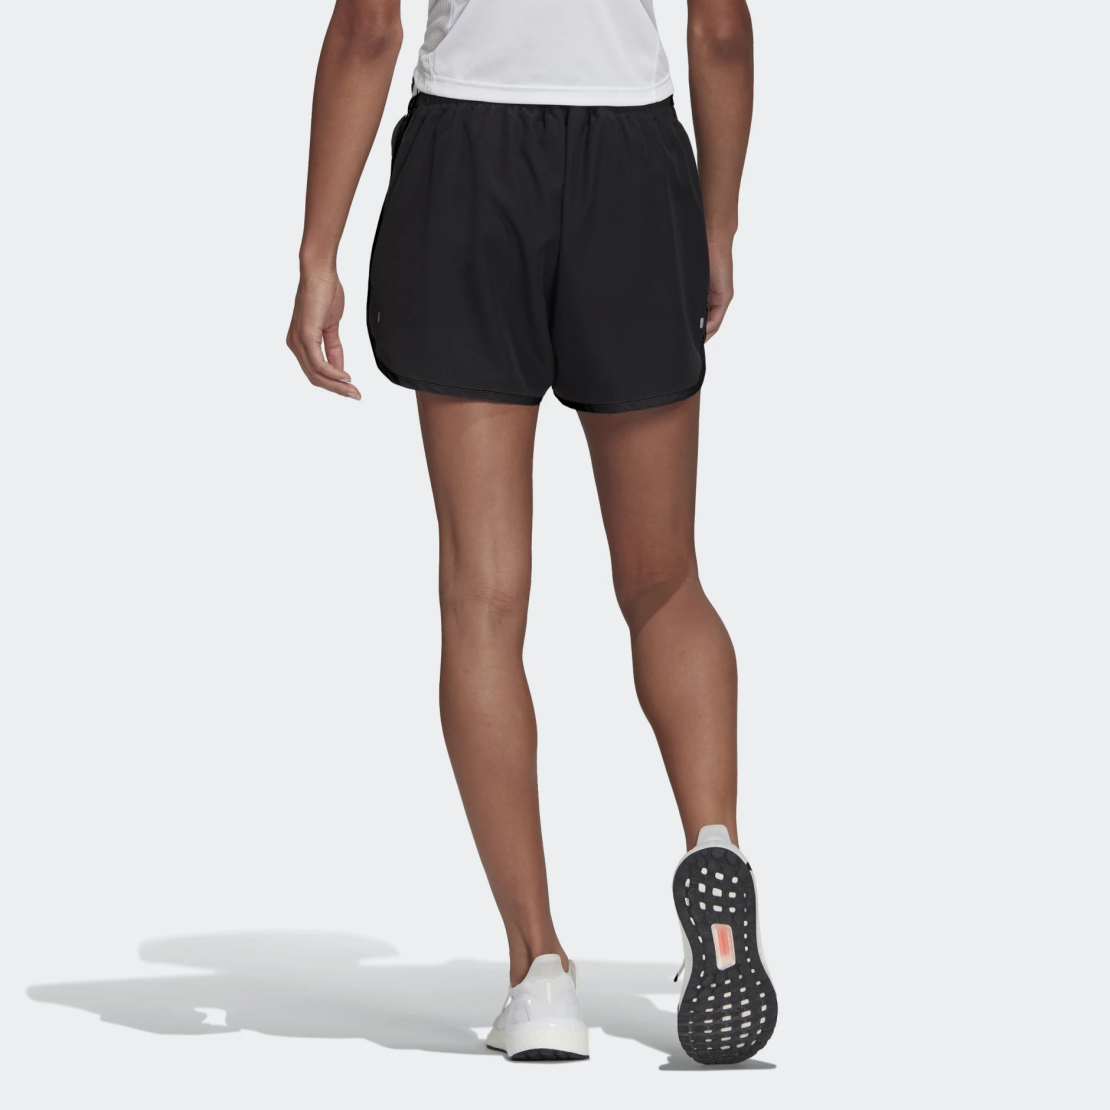 שורט אדידס לנשים | Adidas Marathon Shorts